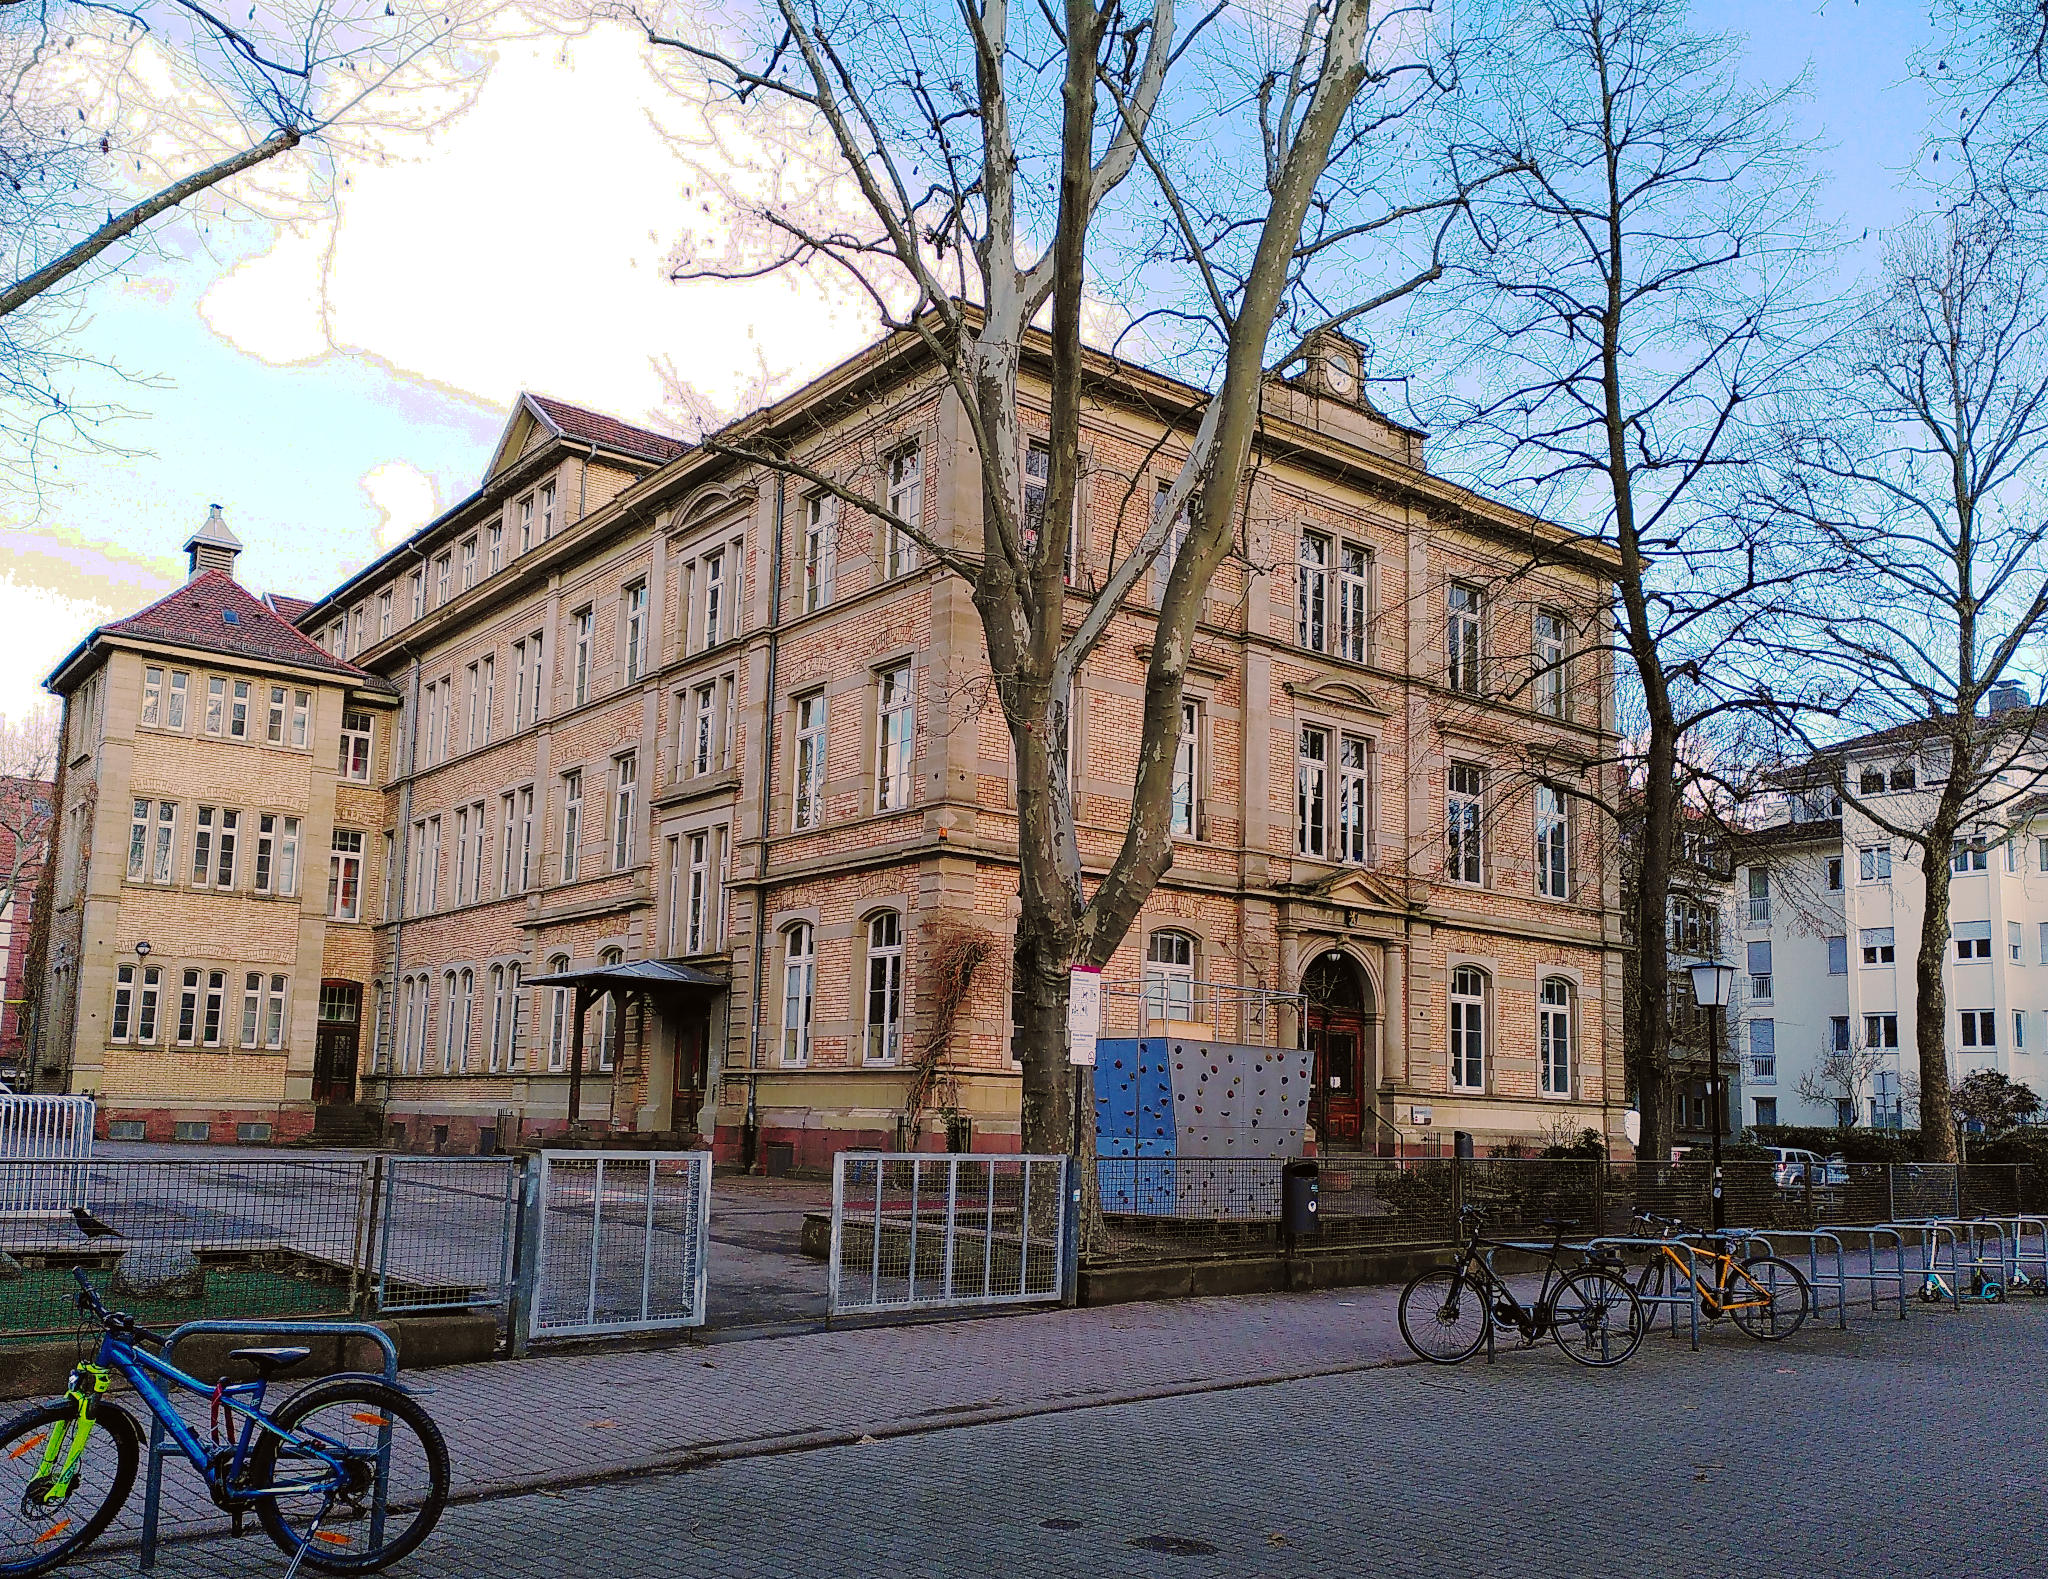 Schulhof und Schulgebäude der Landhausschule. Das Gebäude besteht aus hellen Backsteinen.